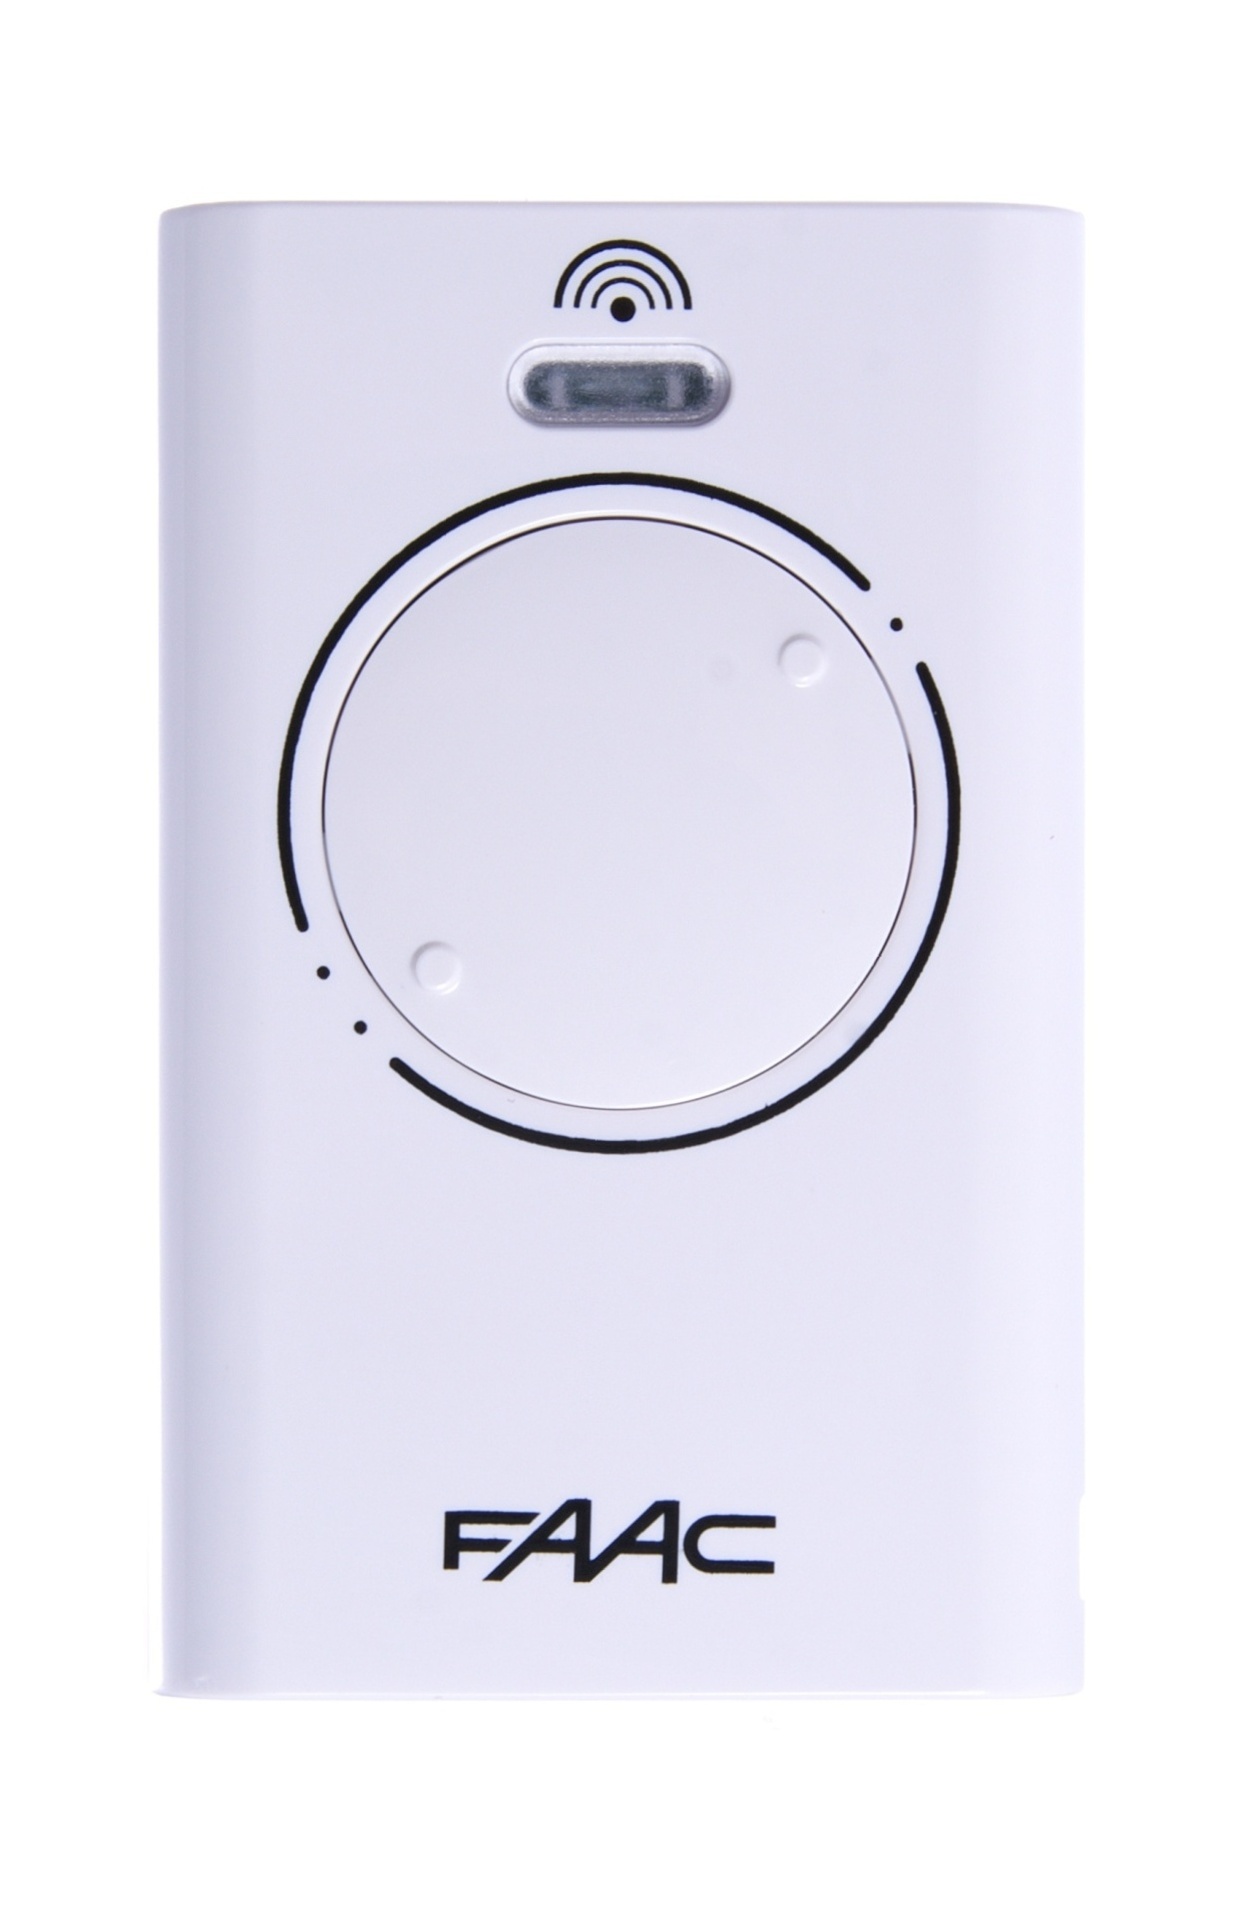 Dálkový ovladač FAAC XT2 868 SLH LR, 2-kanálový ovládač pro pohony Faac, 868,35 MHz, bílý